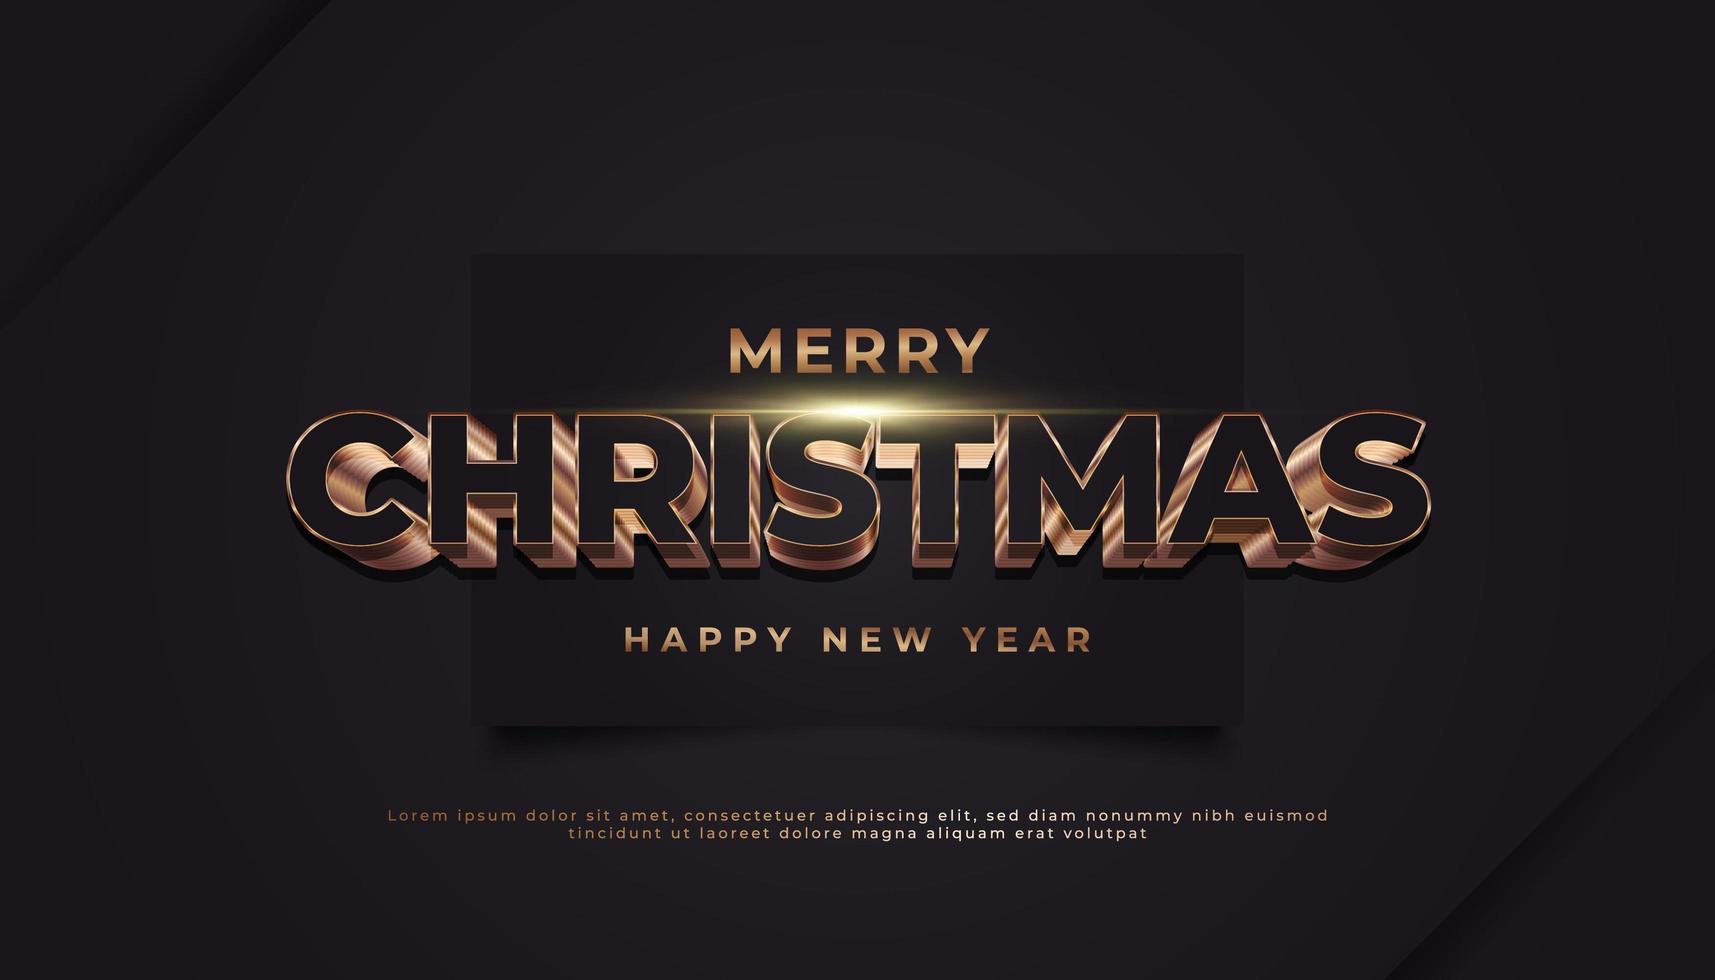 banner de feliz natal com texto dourado 3D em papel preto vetor